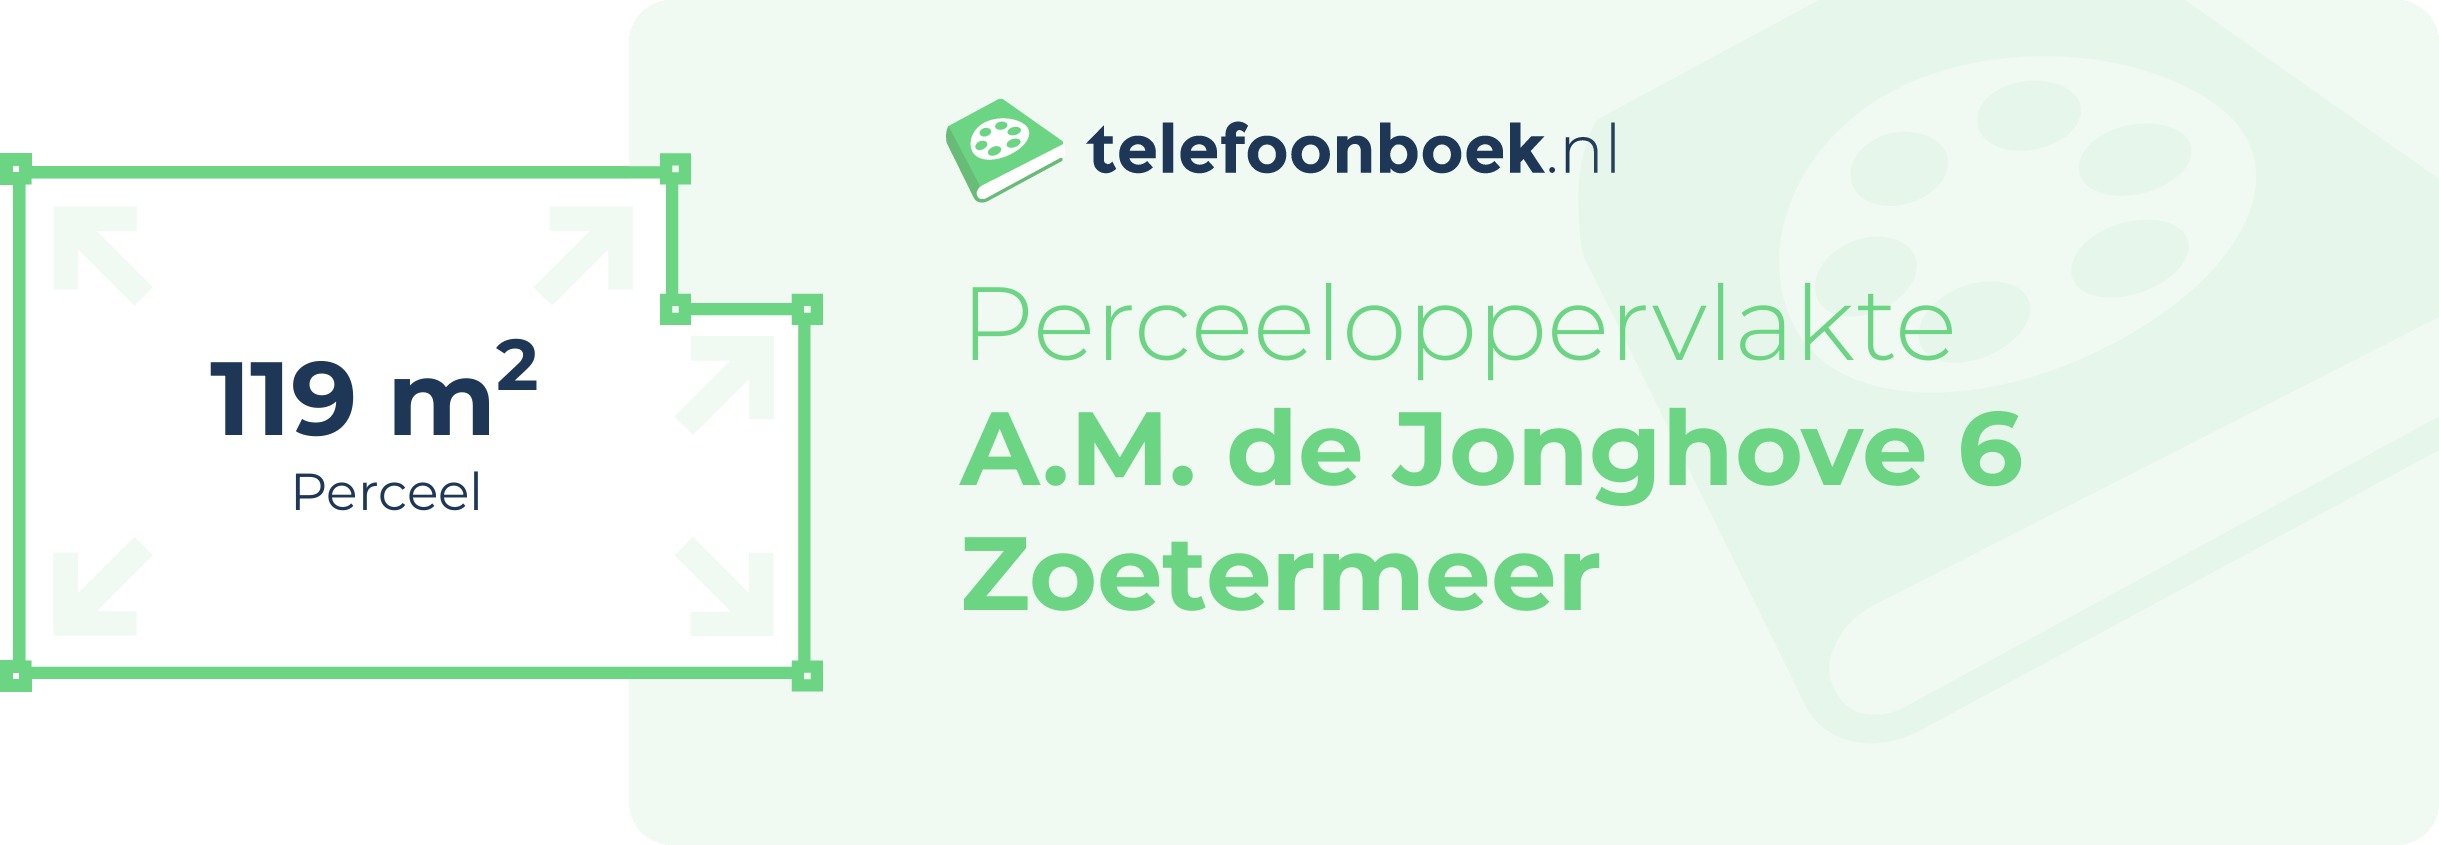 Perceeloppervlakte A.M. De Jonghove 6 Zoetermeer